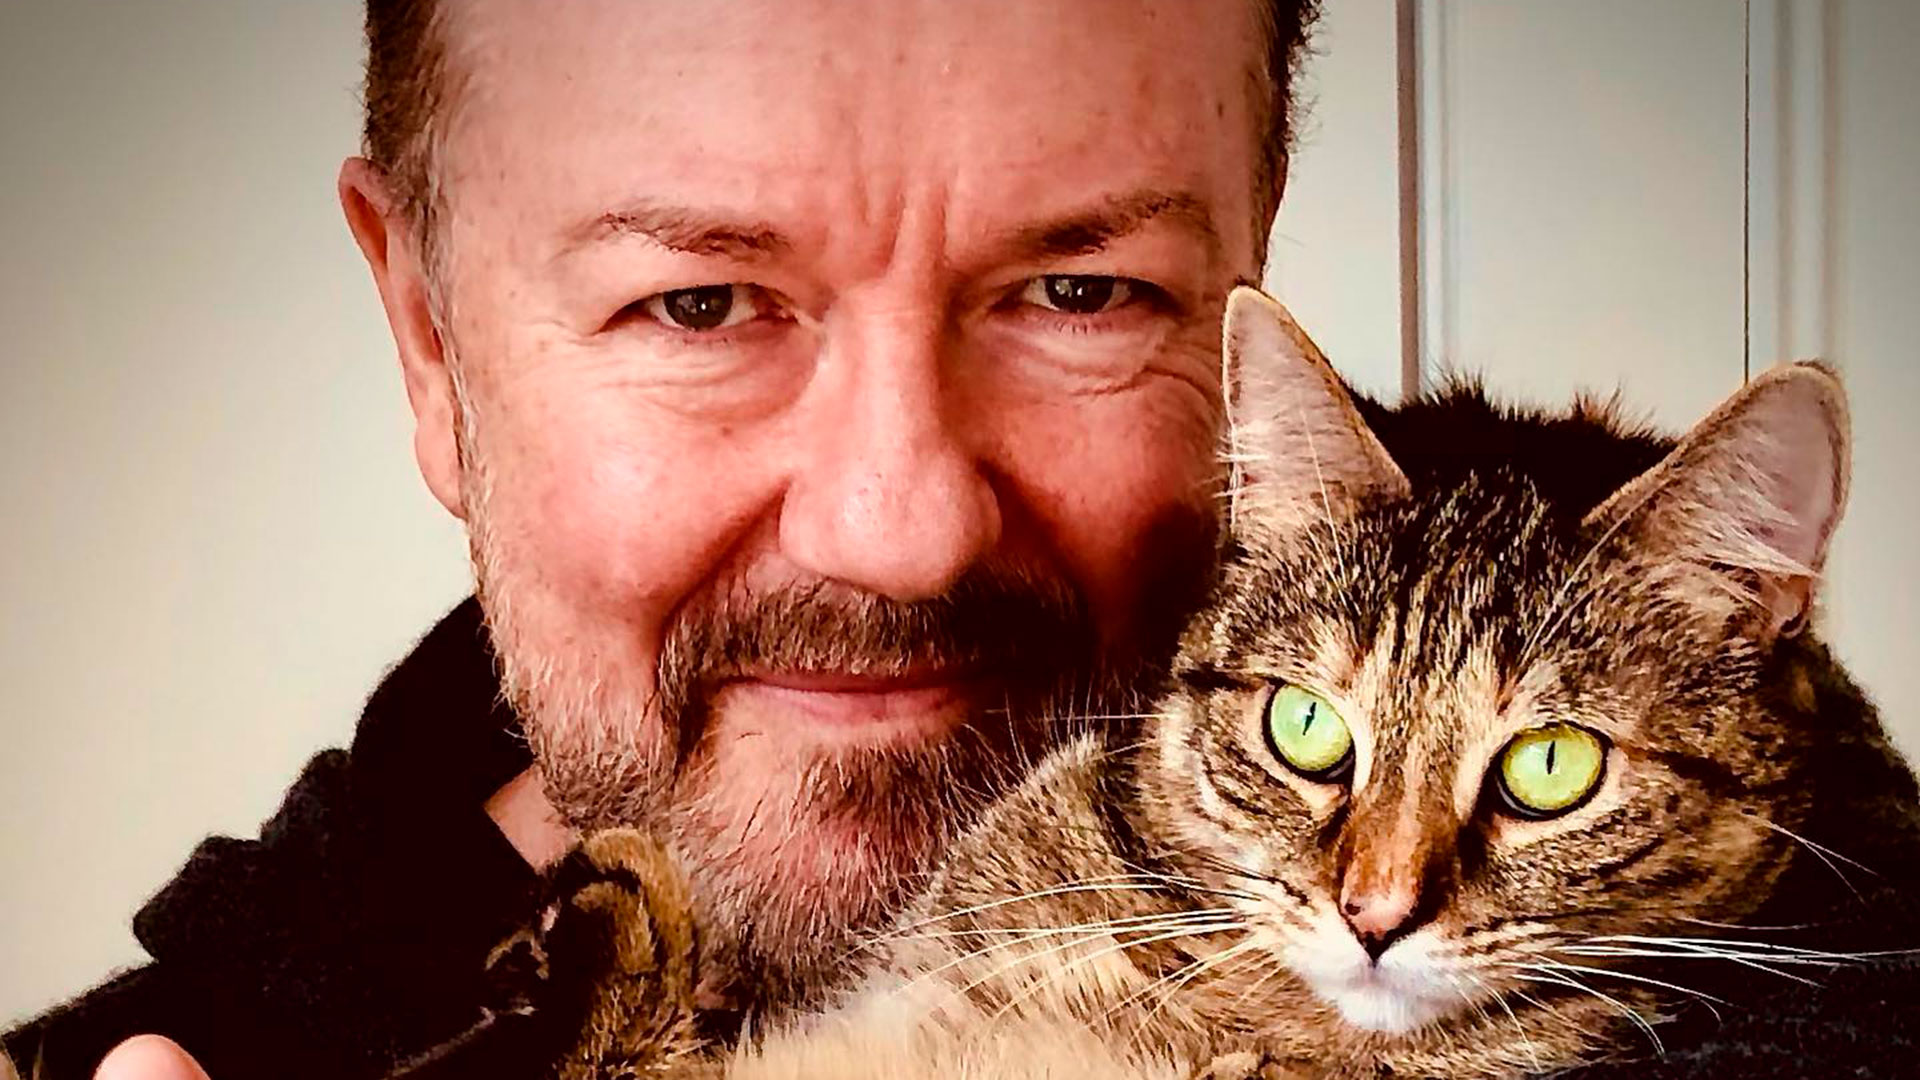 Origen humilde, éxito tardío, veganismo y acidez desde la cuna: la invención de Ricky Gervais